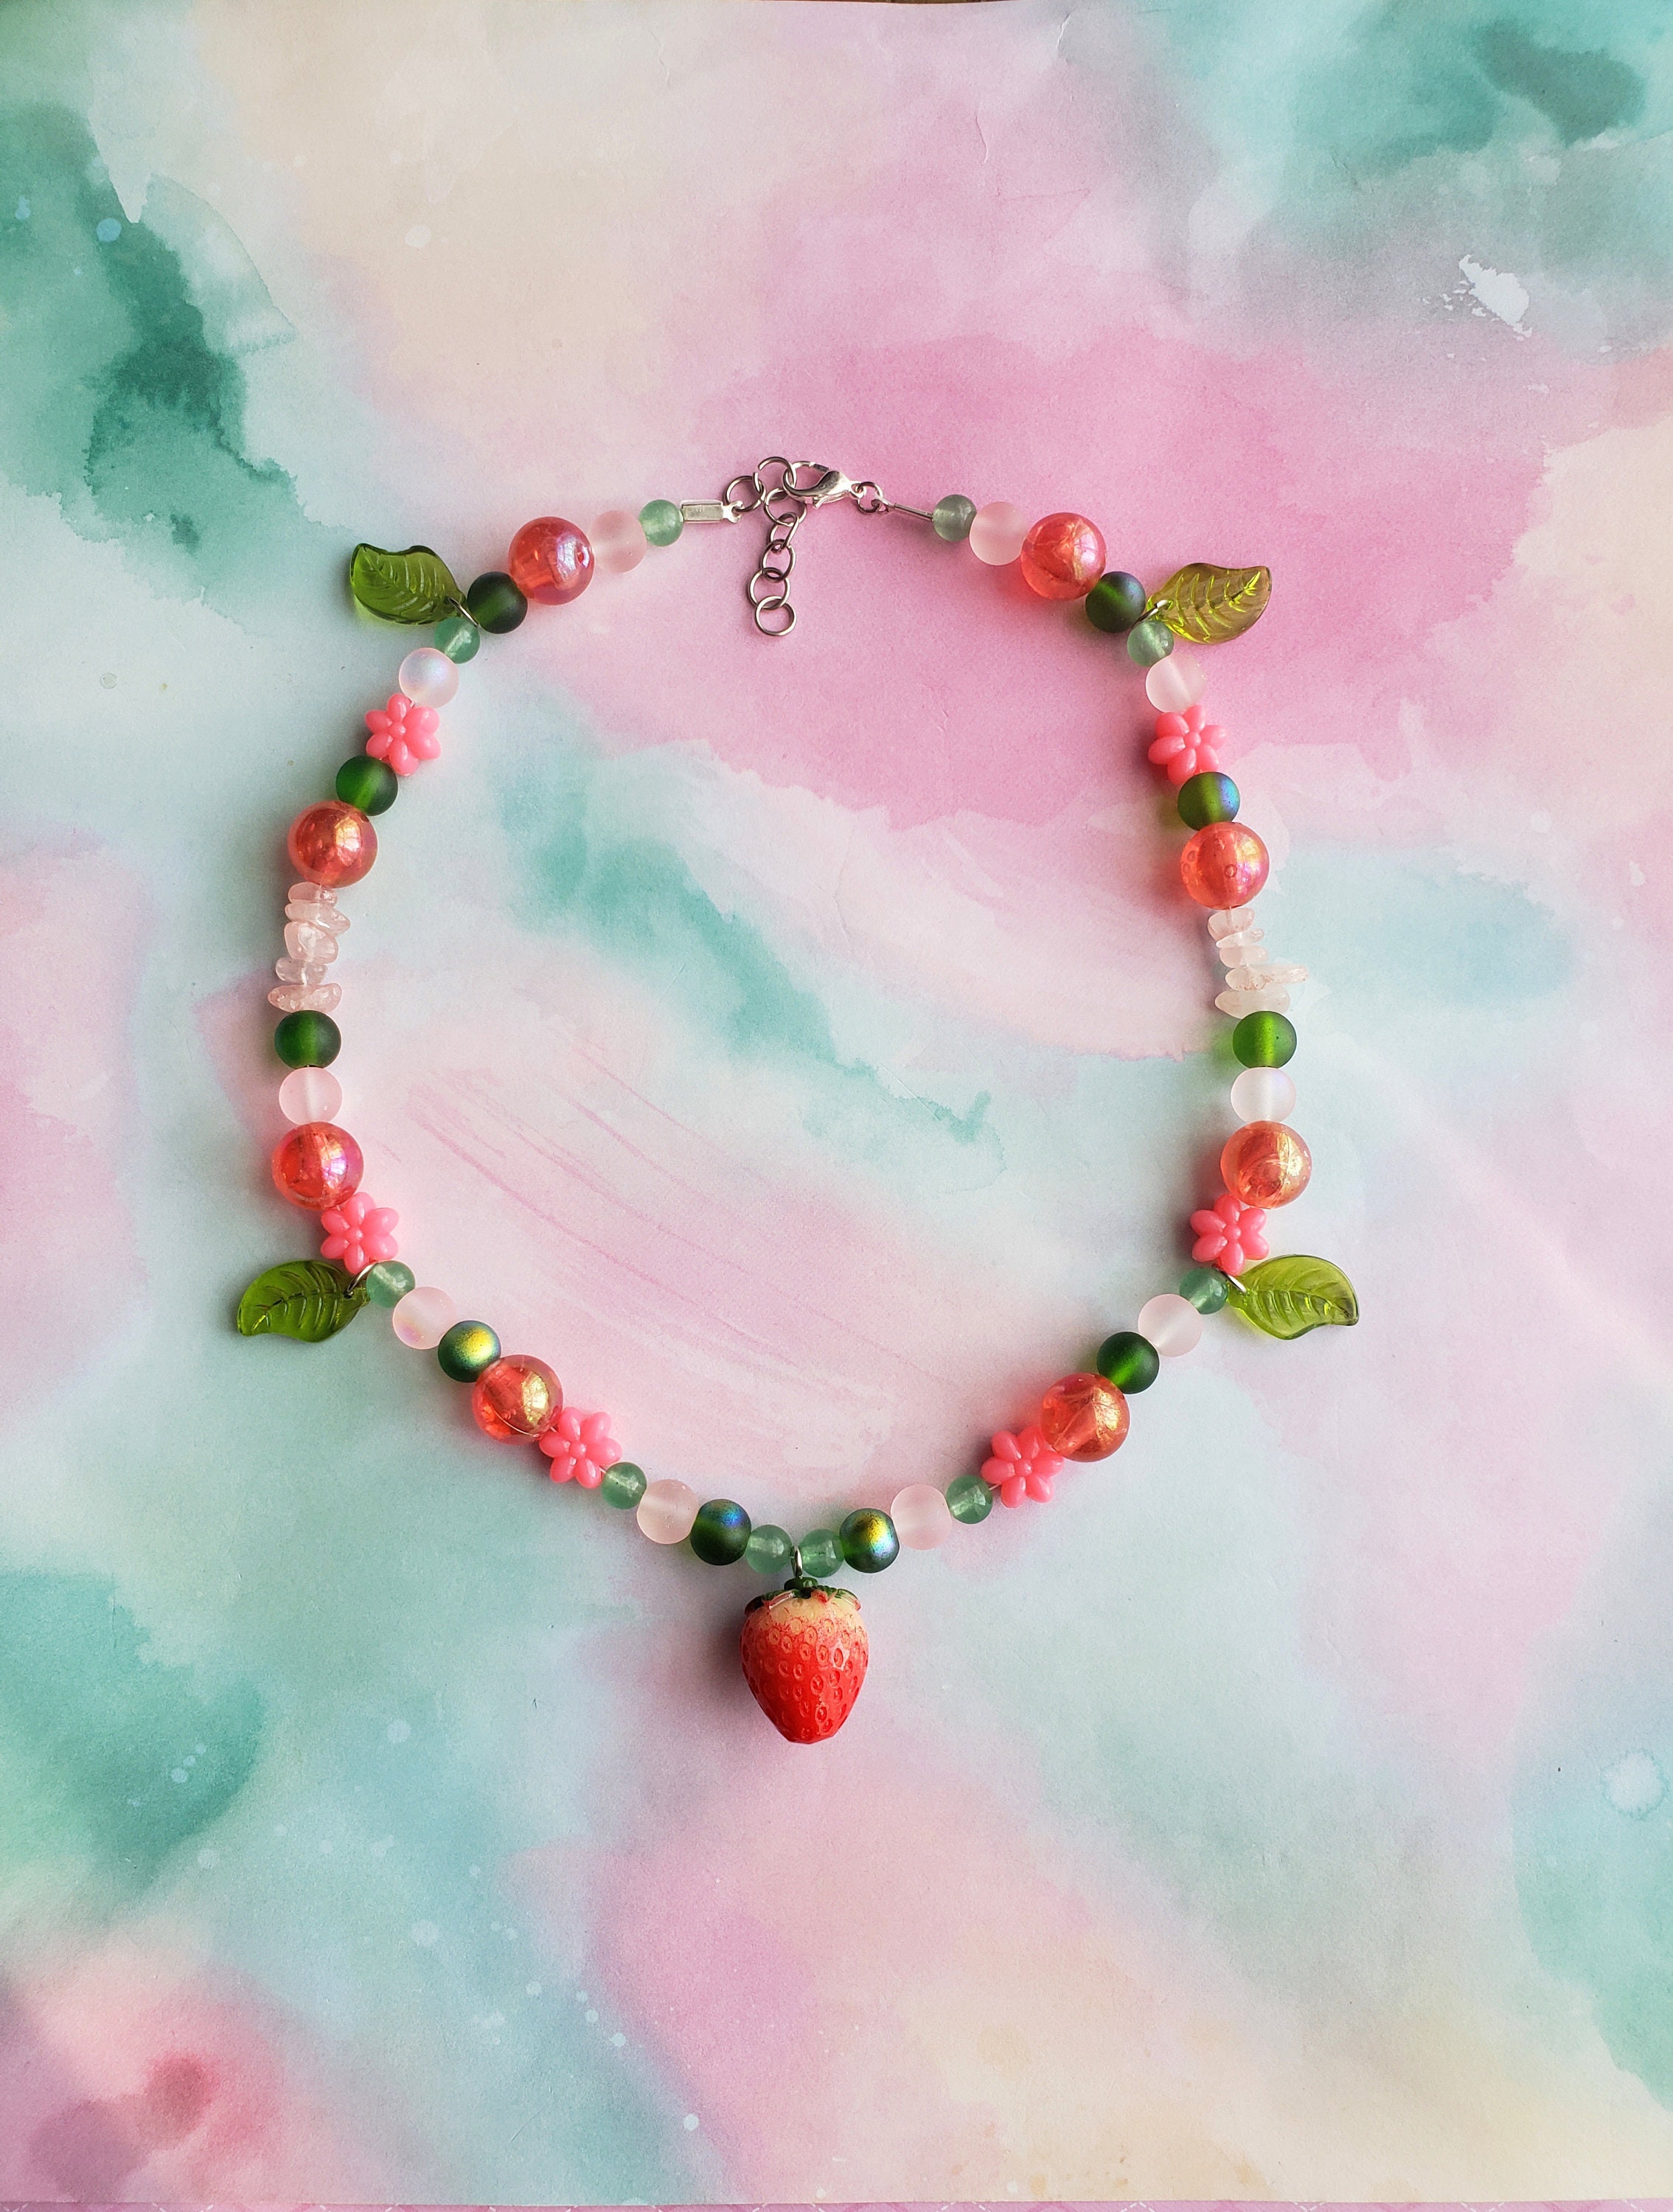 Strawberry Beads Handmade, Original Strawberry Beads